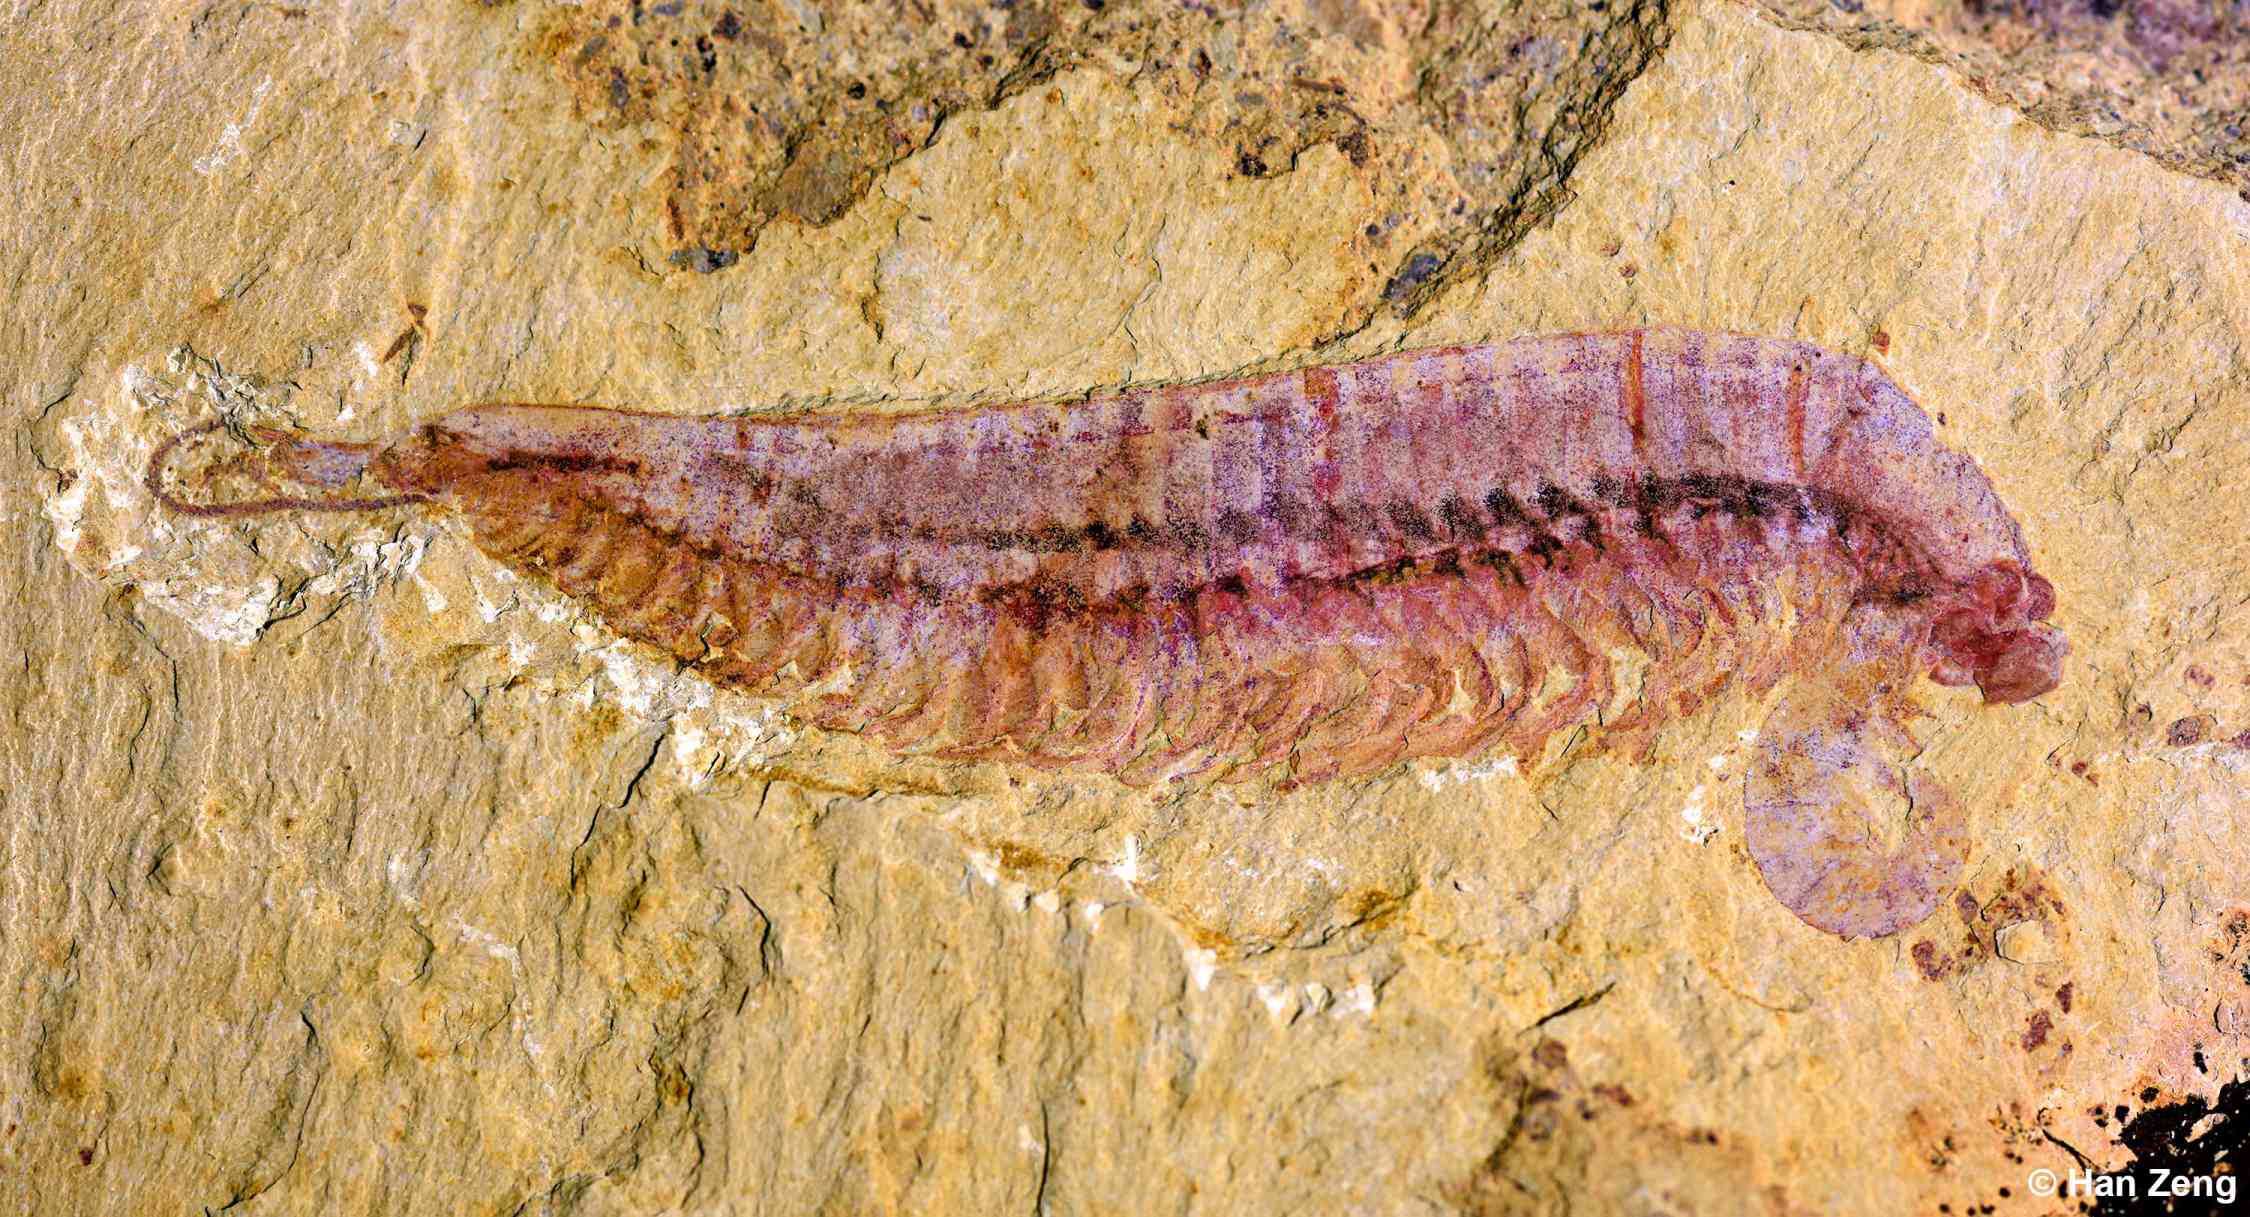 Kylinxia'nın fosil örneği, holotip